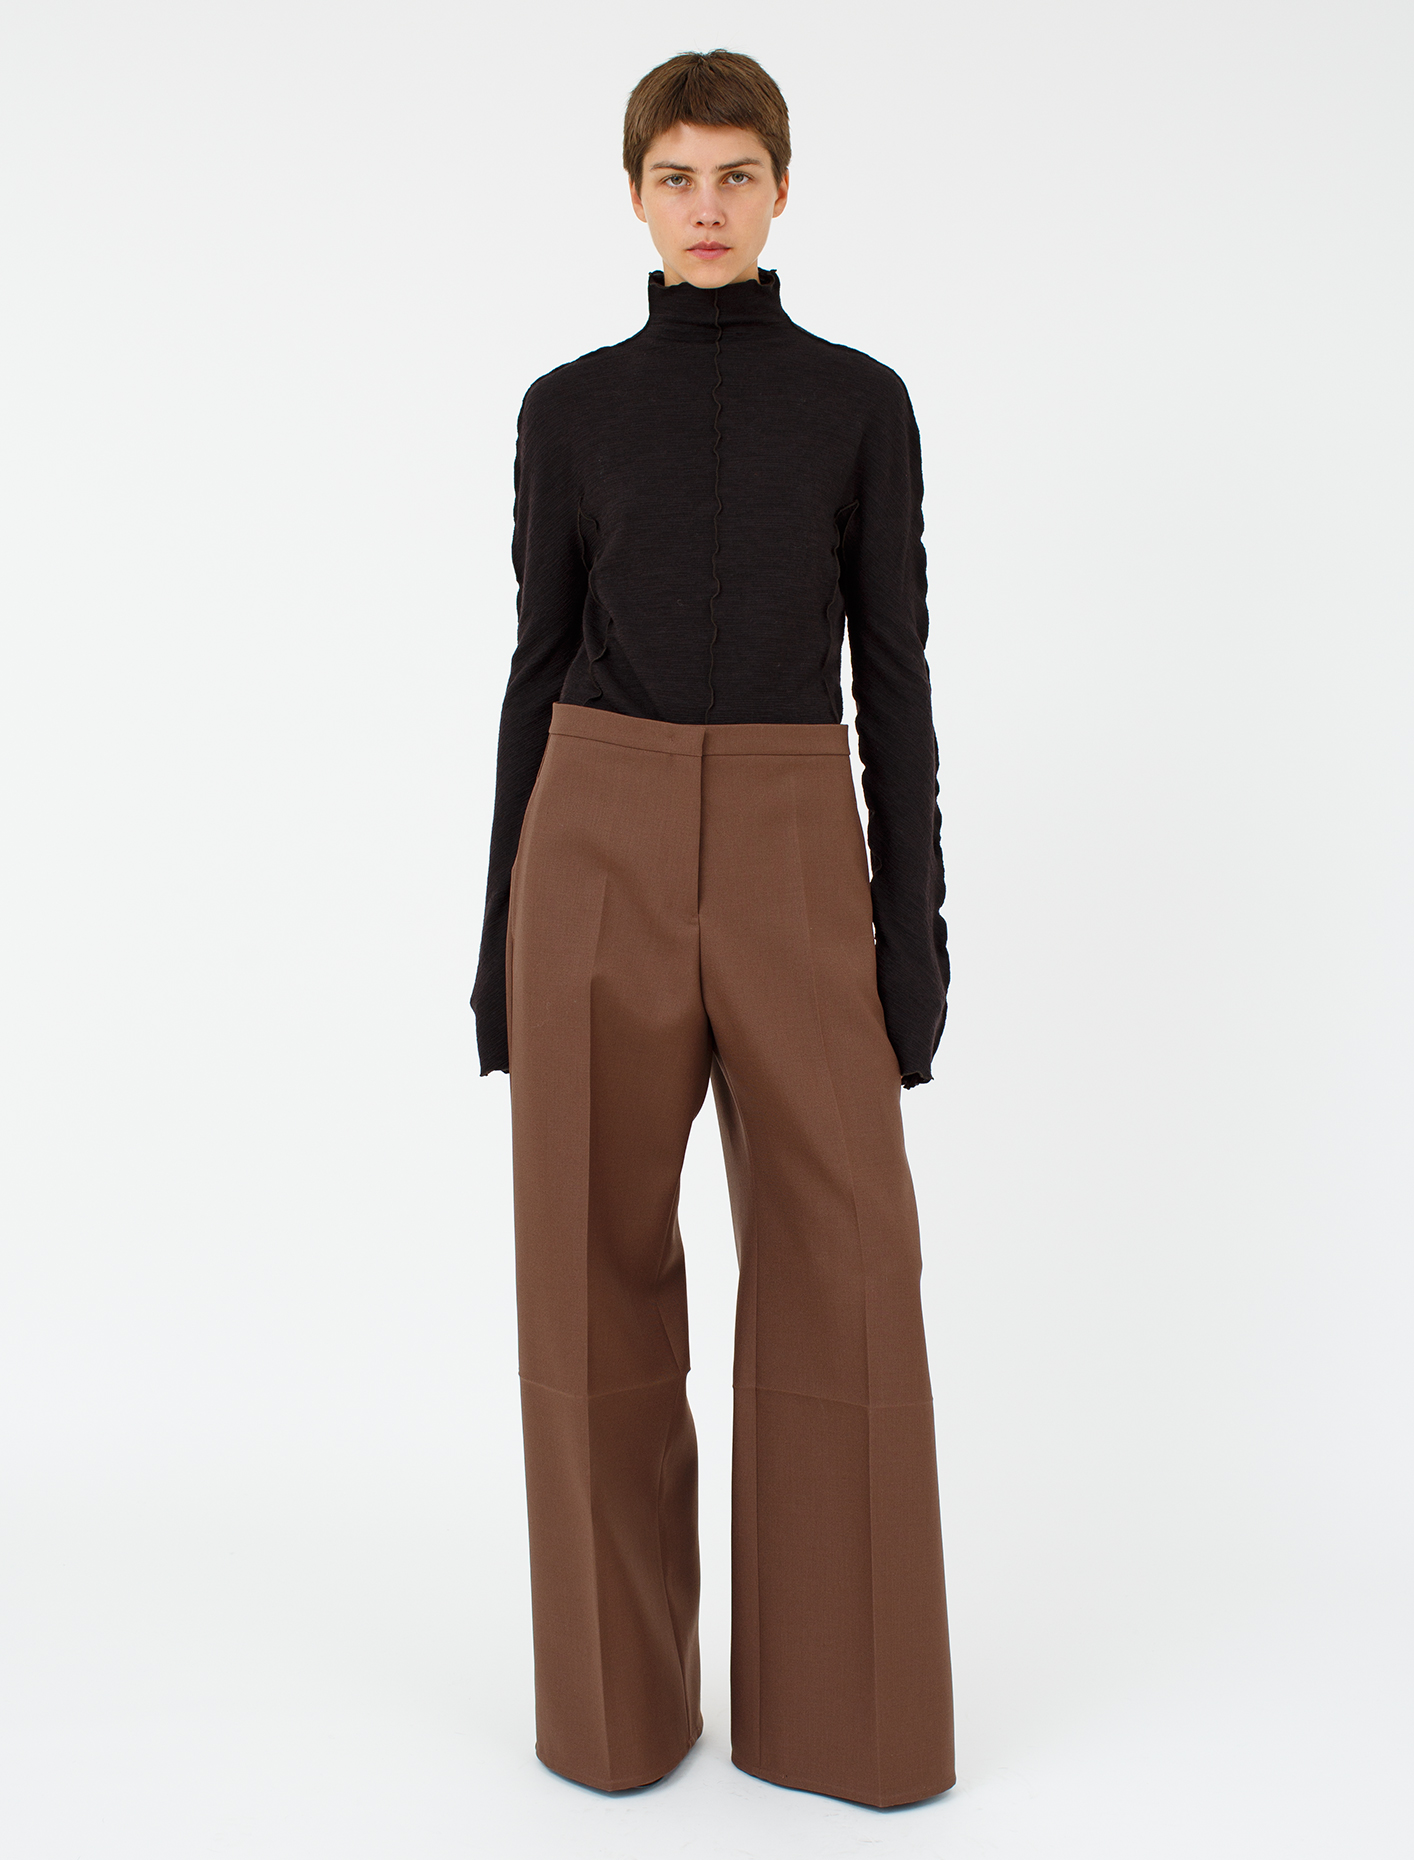 Jil Sander Wool Trouser in Medium Brown | Voo Store Berlin | Worldwide ...